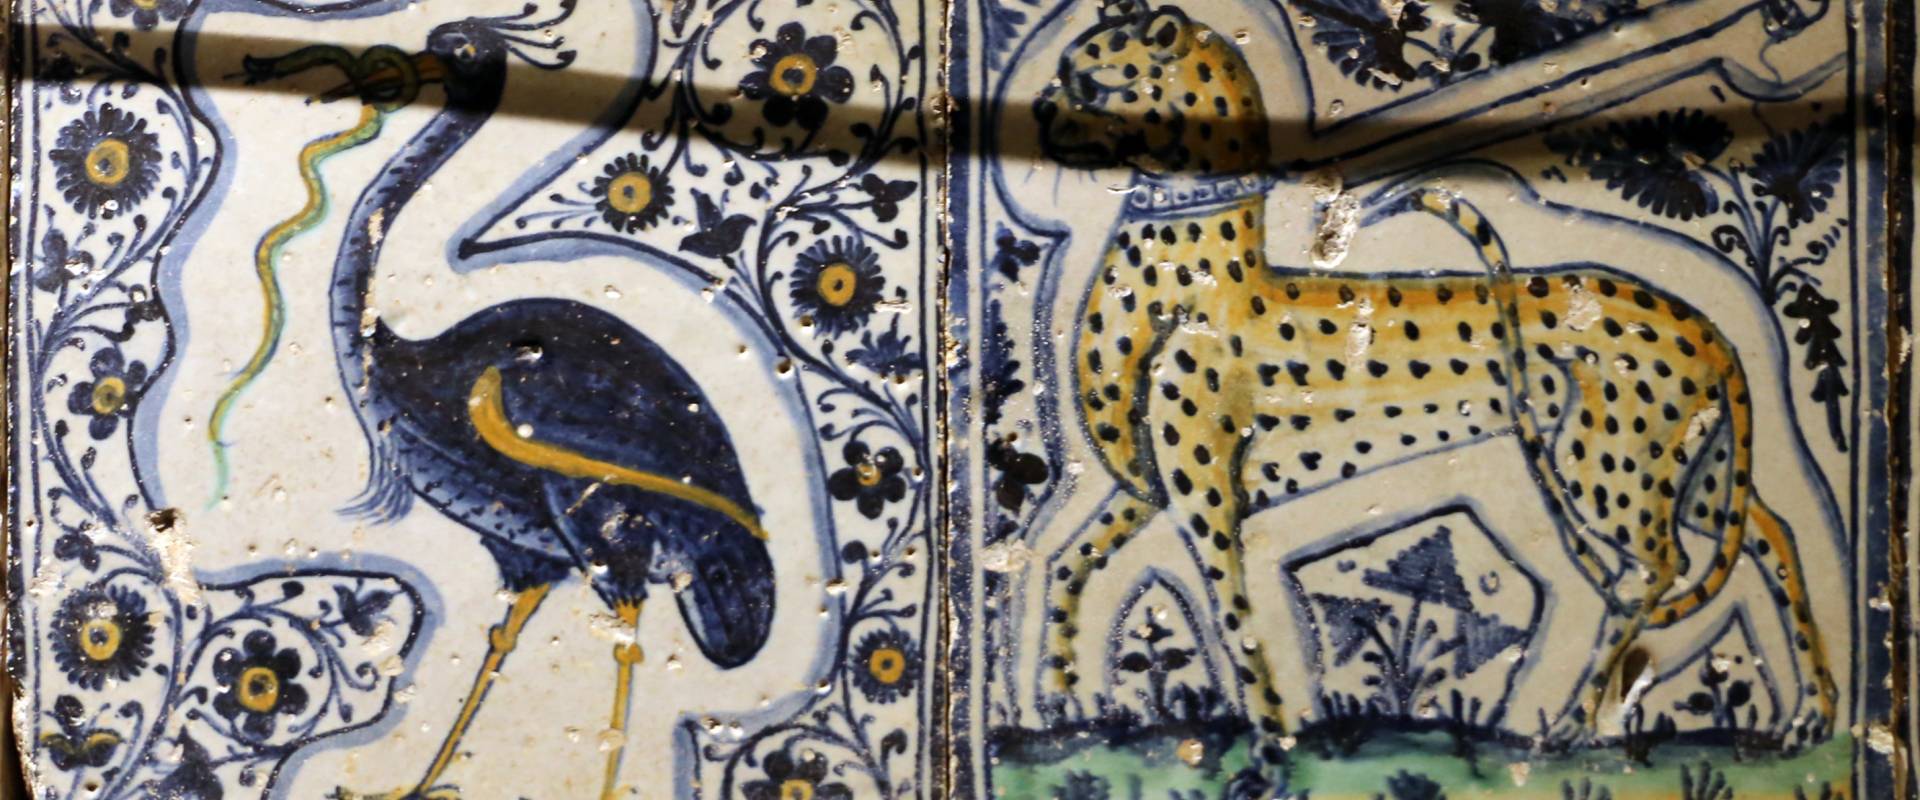 Bottega pesarese, pavimento maiolicato dal monastero di san paolo a parma, 1470-82 ca., struzzo con serpente e leopardo photo by Sailko